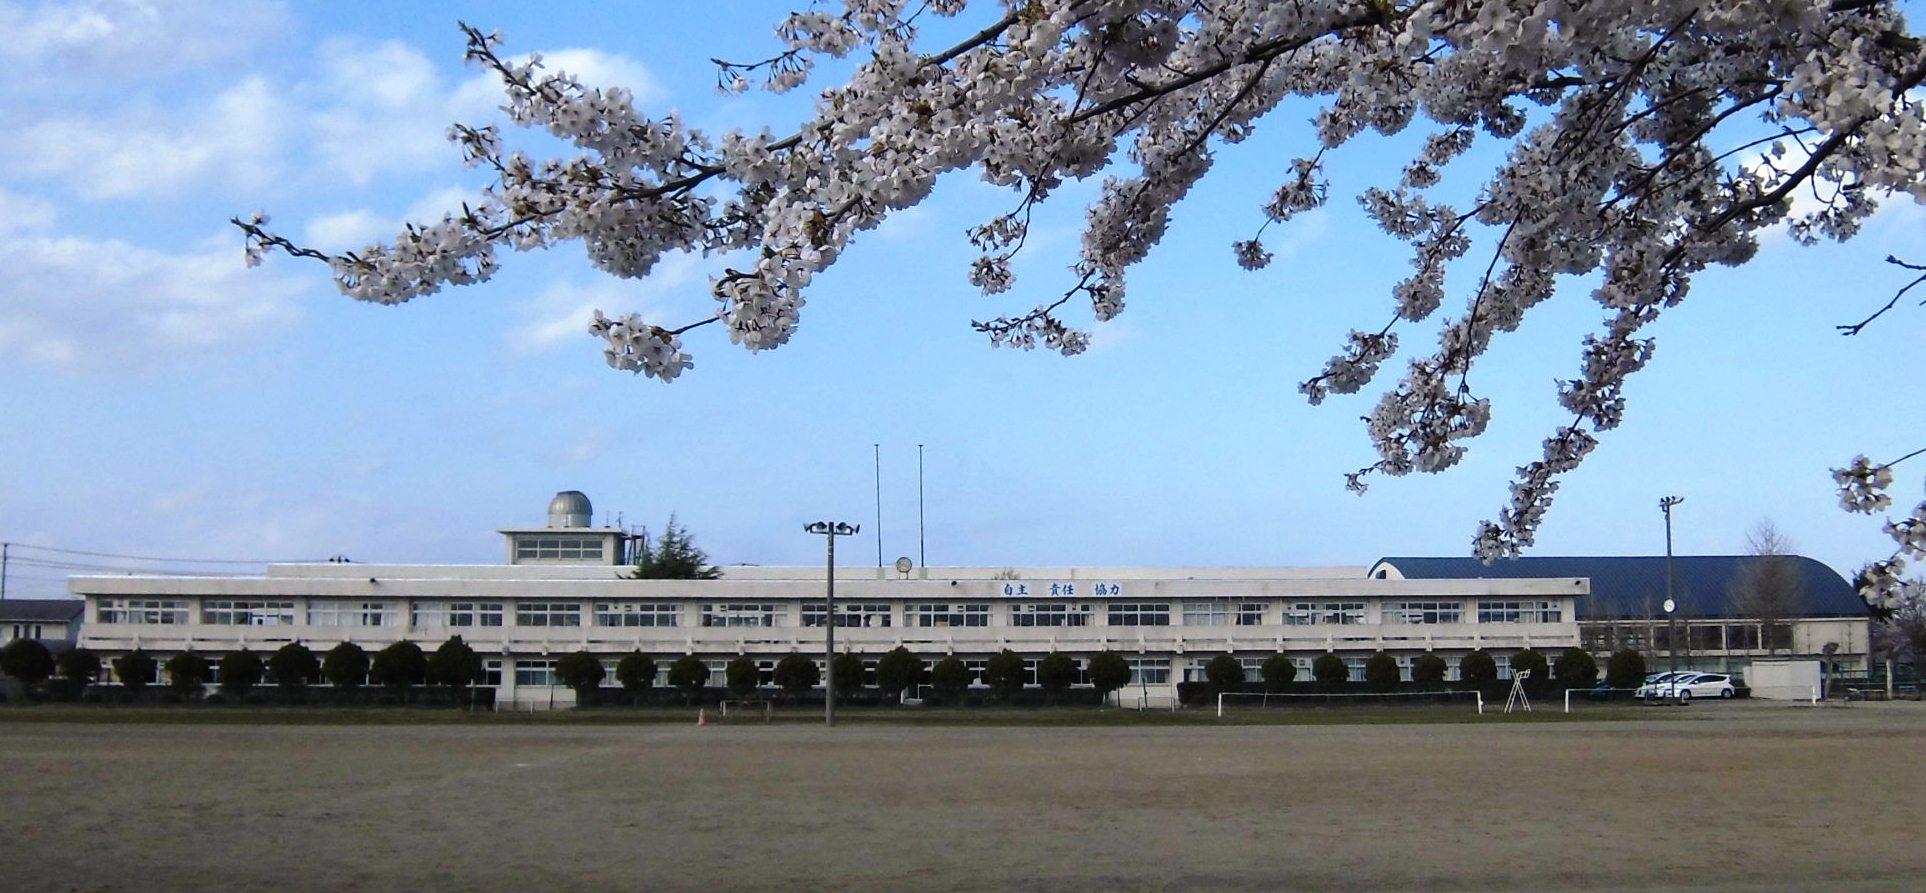 手前には、満開の桜があり、広い運動場の奥には等間隔に植えられた植木と白い2階建ての水沢中学校外観写真